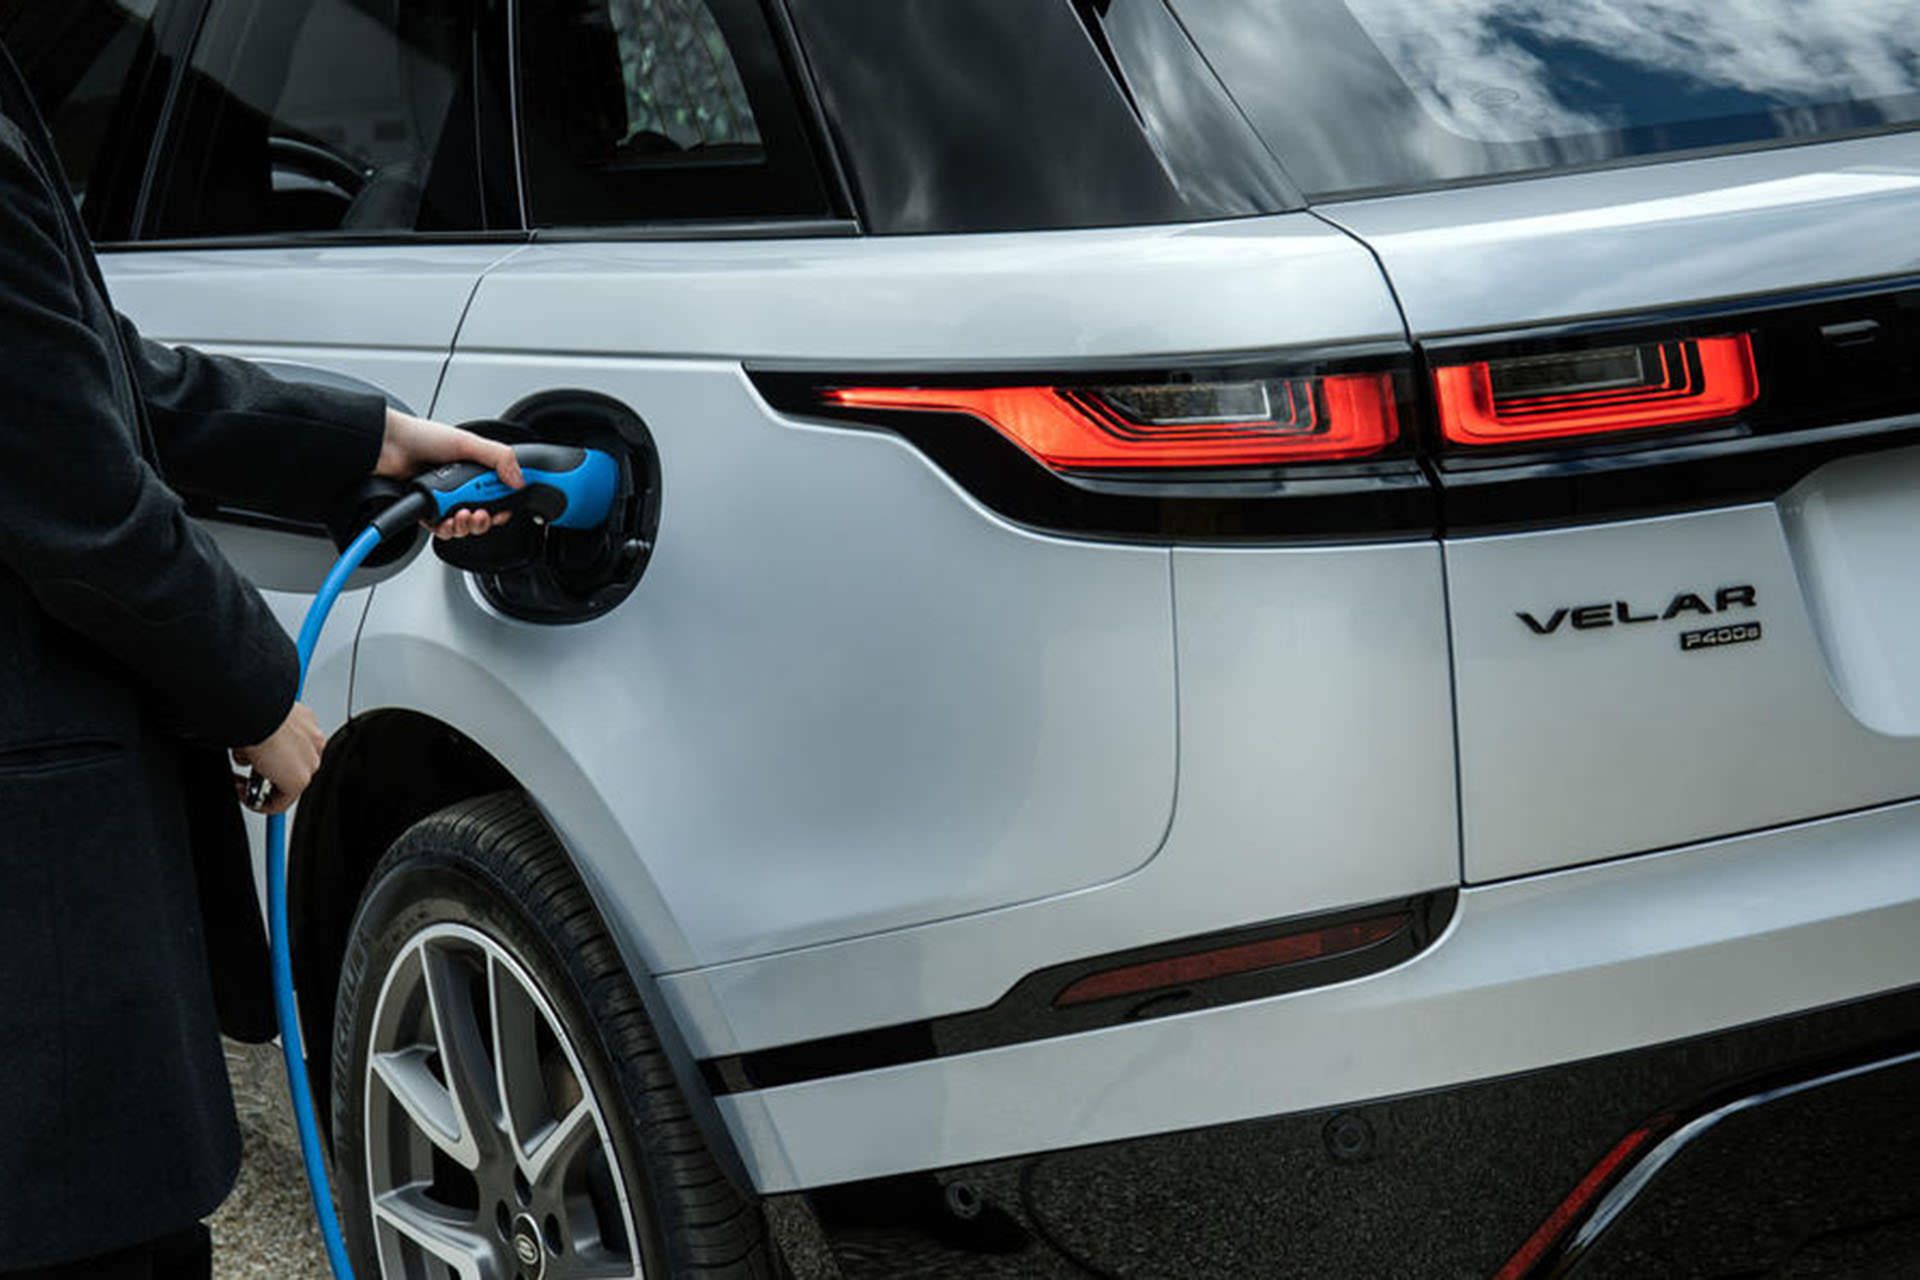 مرجع متخصصين ايران خودروي الكتريكي / Electric Car در حال شارژ در خانه